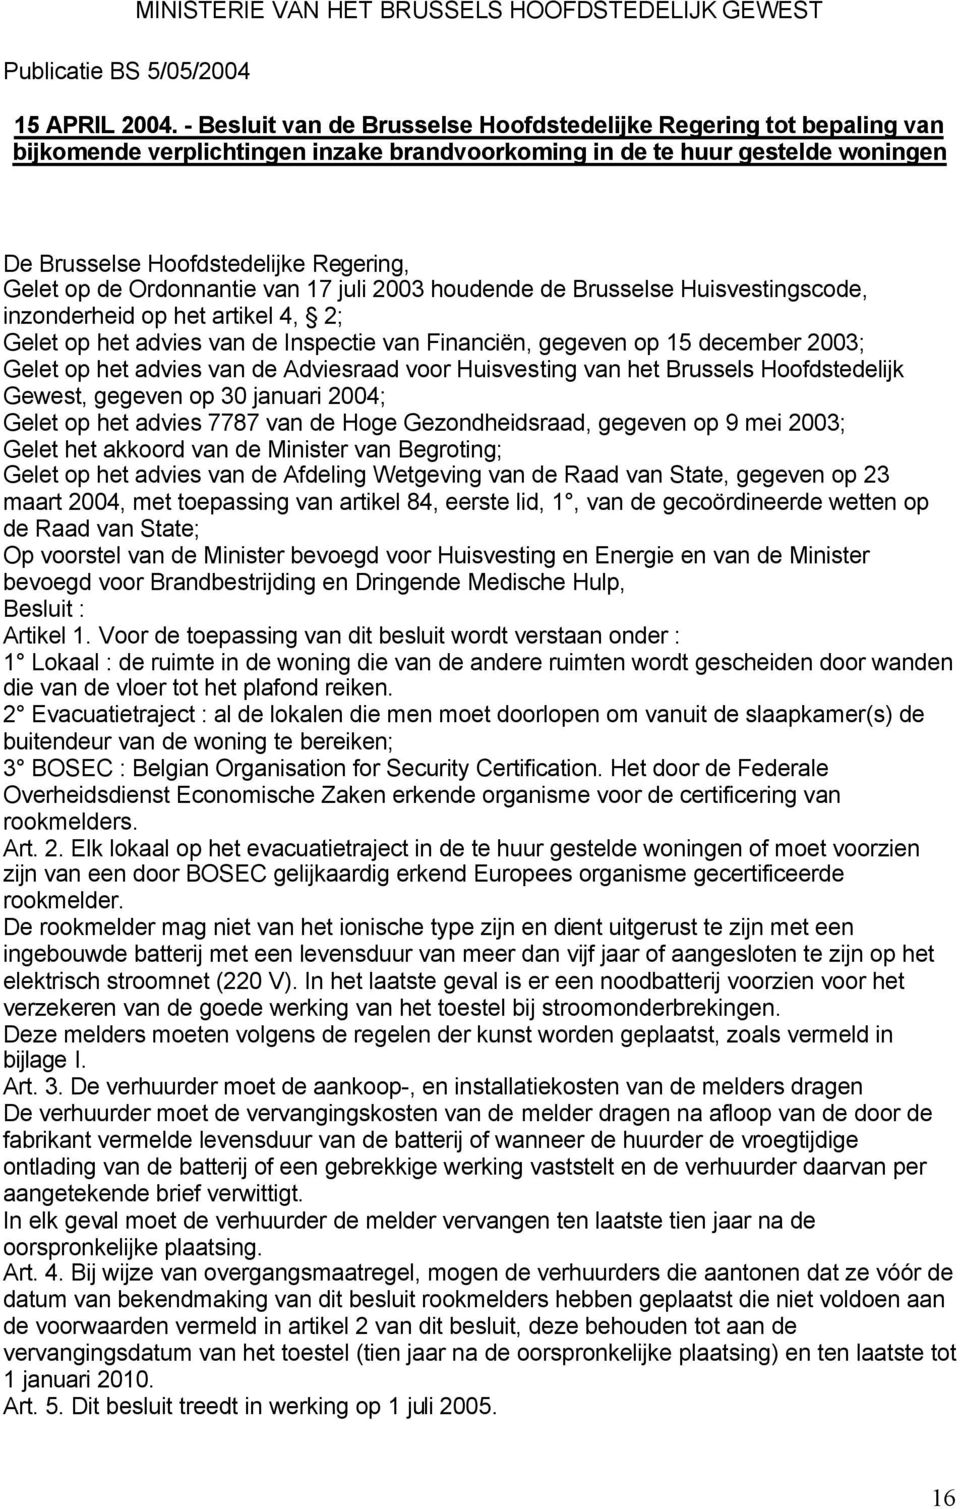 de Ordonnantie van 17 juli 2003 houdende de Brusselse Huisvestingscode, inzonderheid op het artikel 4, 2; Gelet op het advies van de Inspectie van Financiën, gegeven op 15 december 2003; Gelet op het